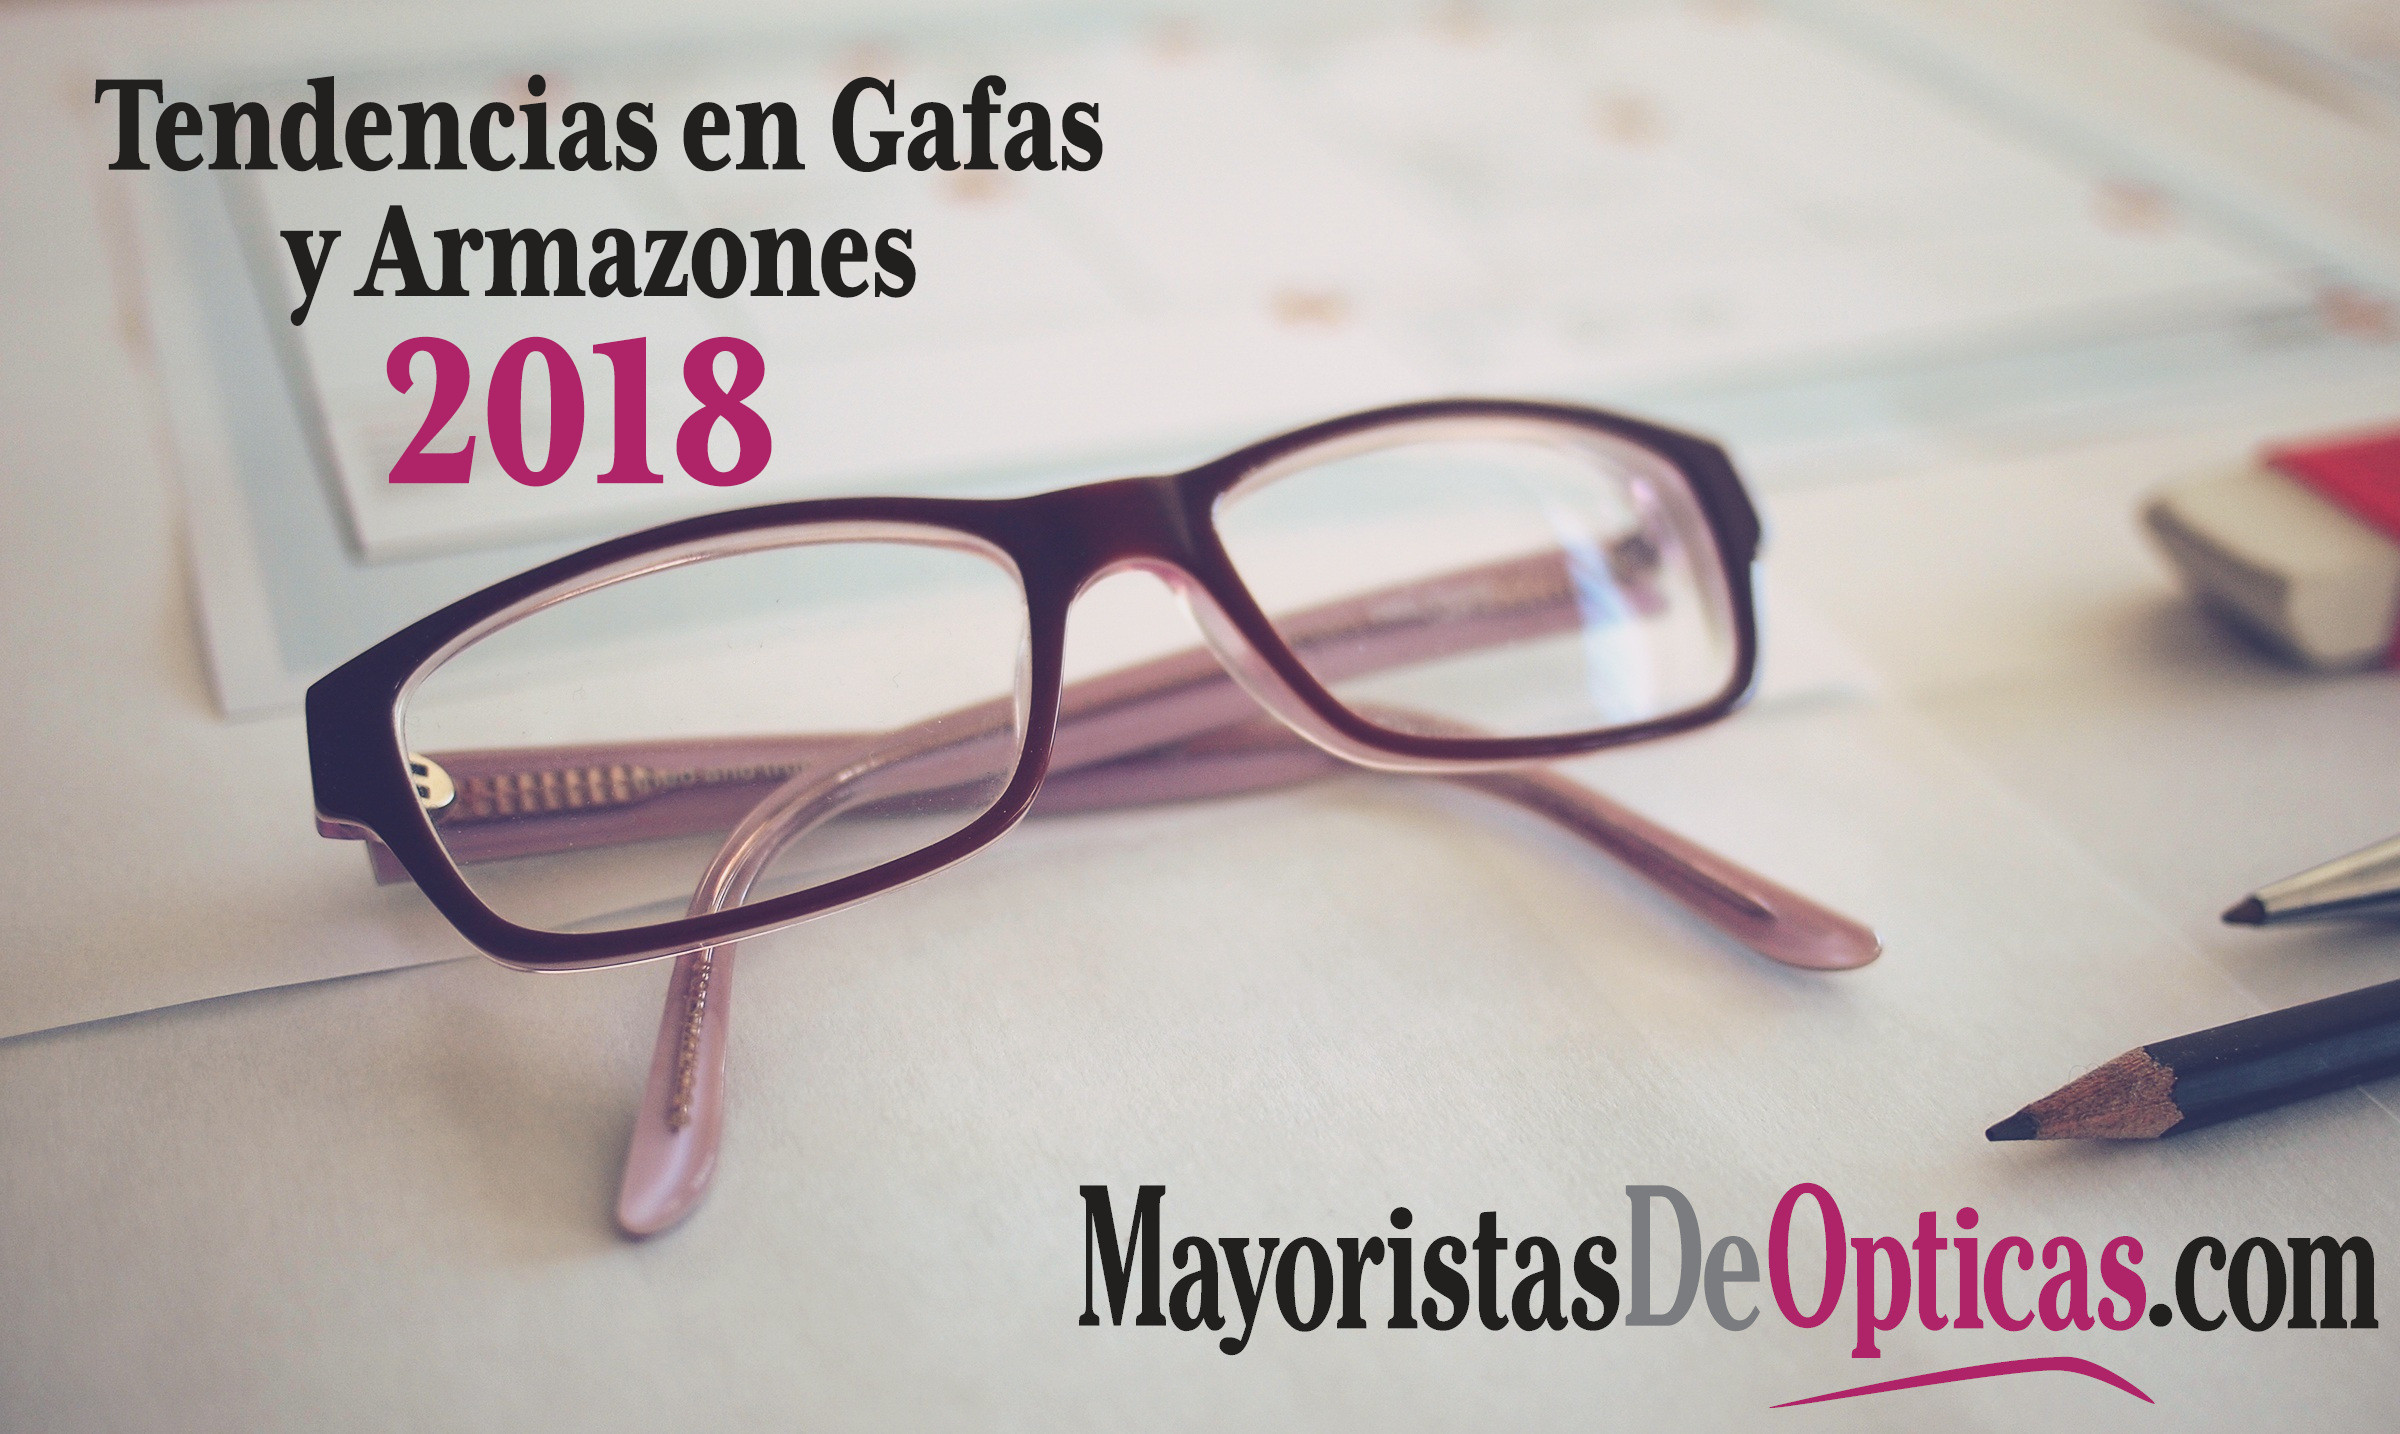 espiritual Lío evolución Tendencias en Gafas y Armazones 2018 - MayoristasDeOpticas.com